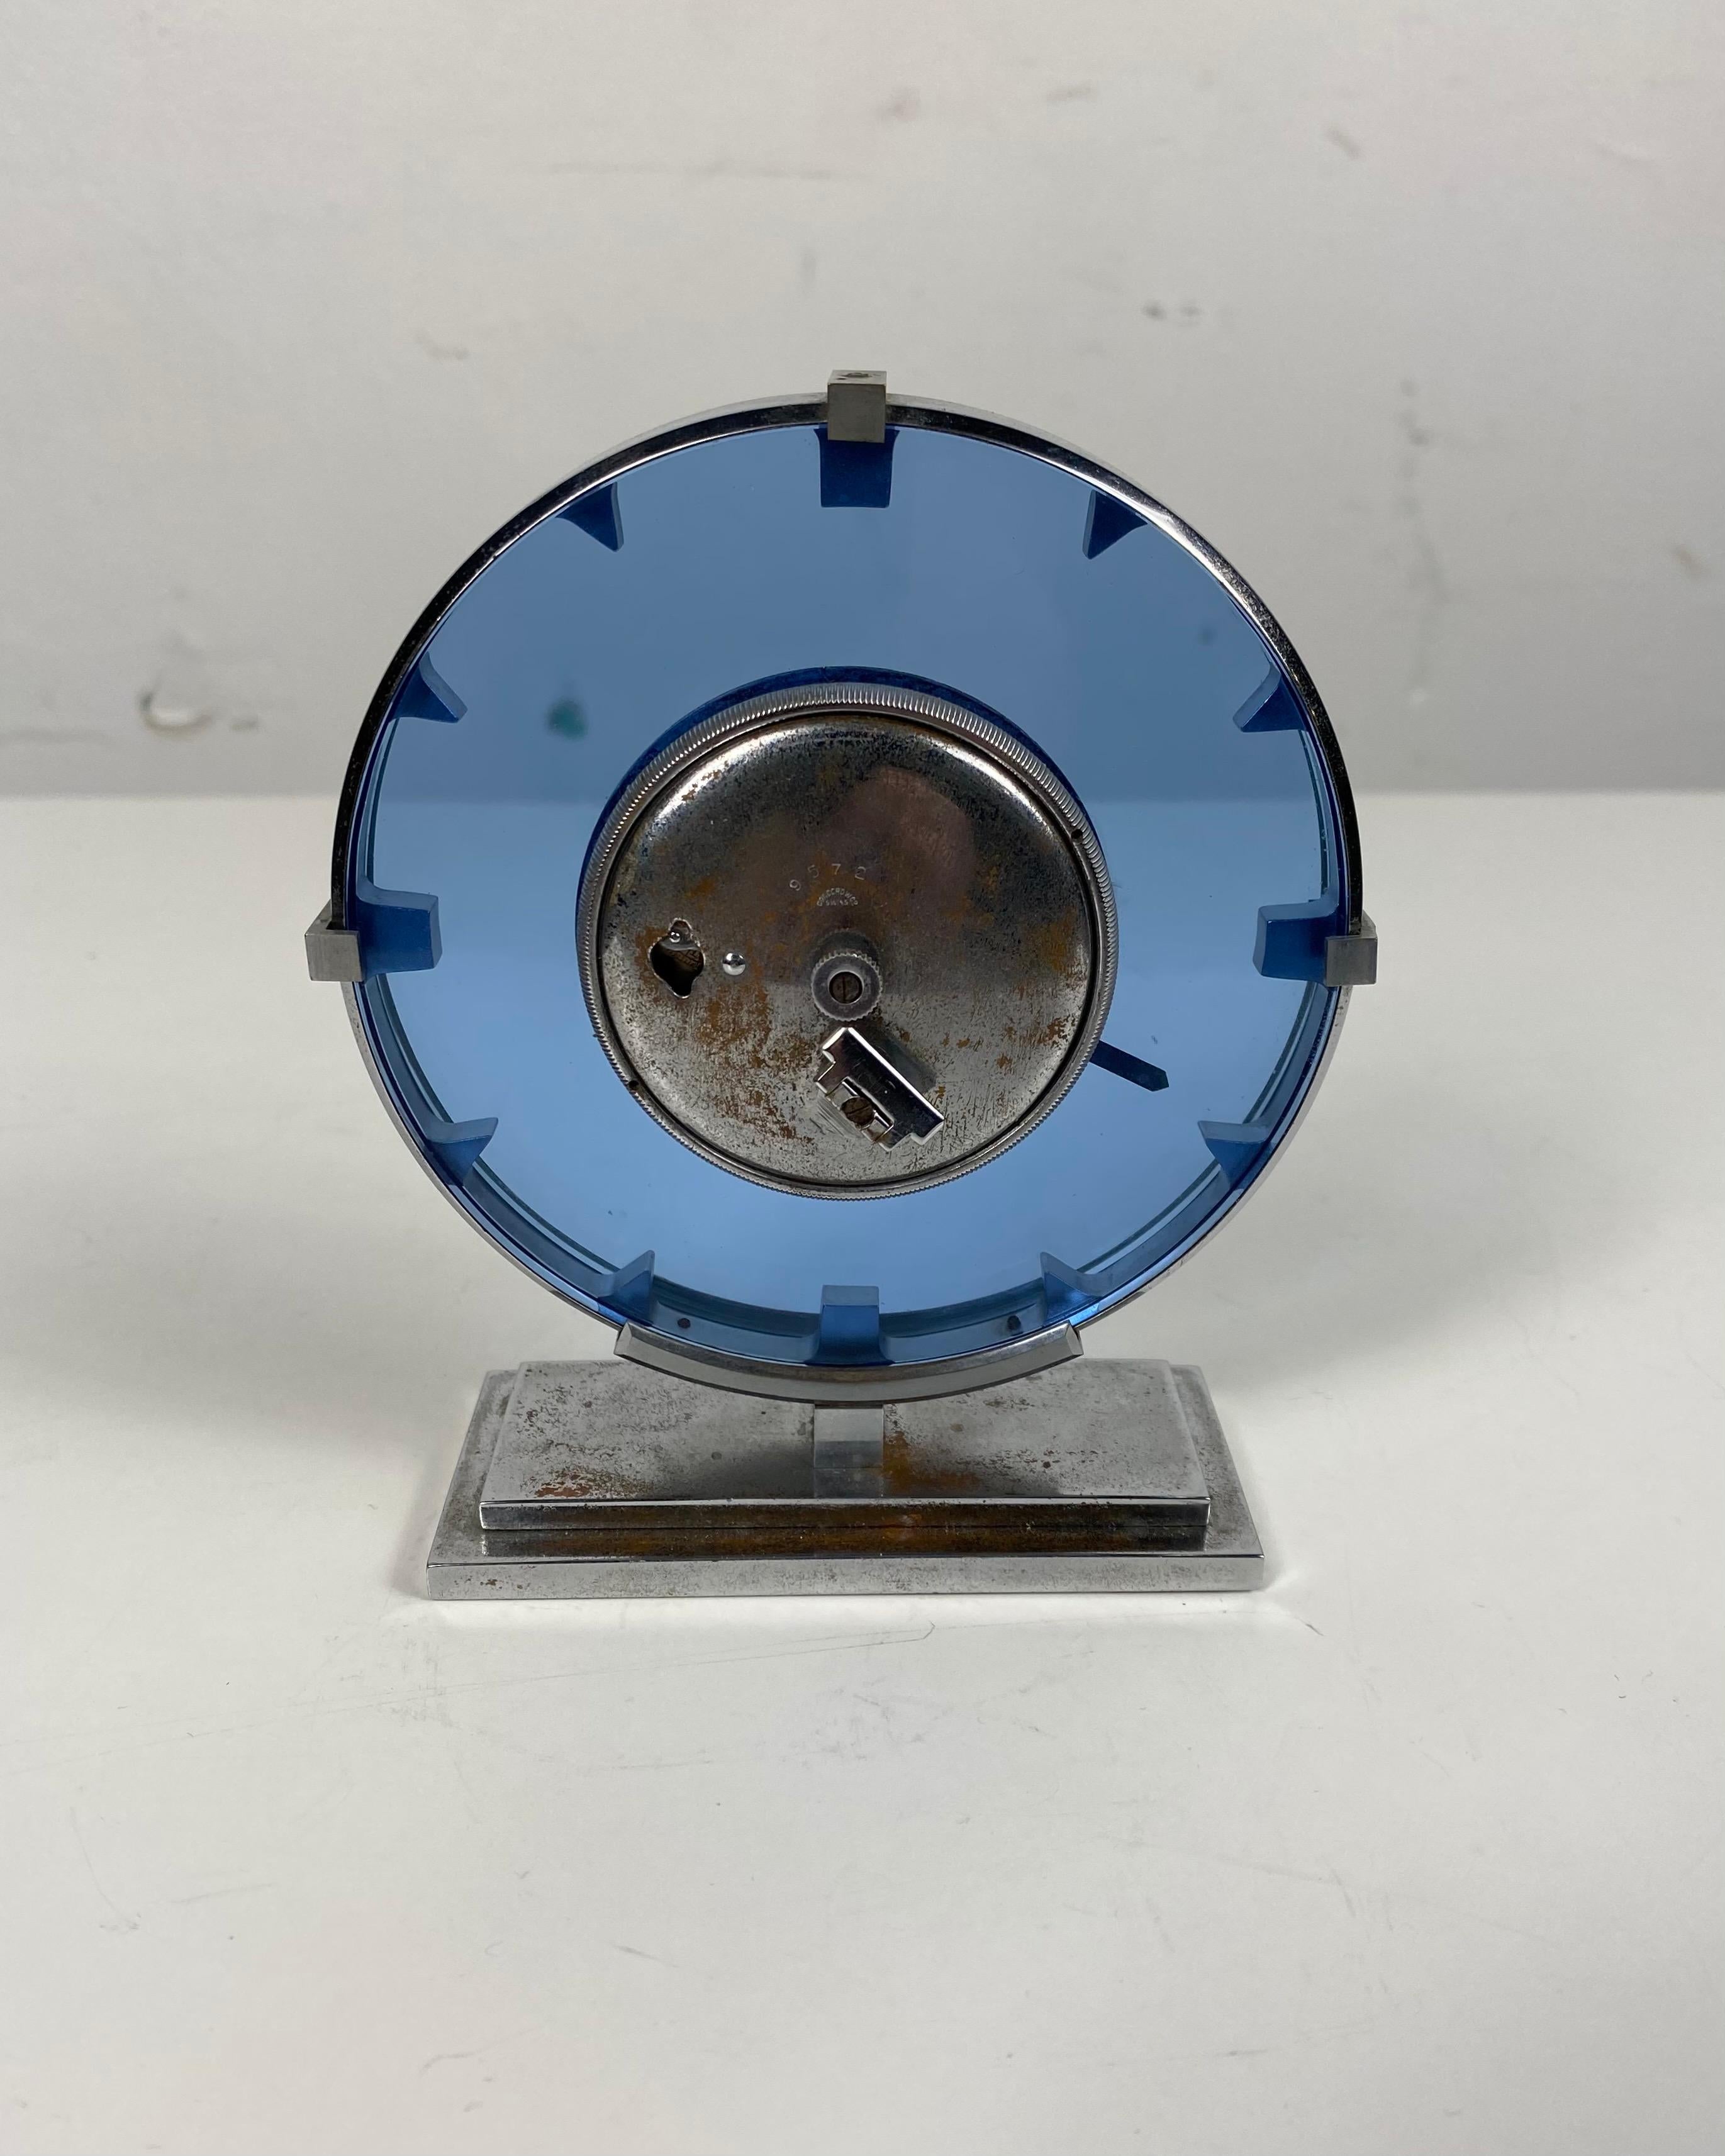 Impresionante Reloj Art Decó / Machine Age de Acero Inoxidable y Cristal Azul Estadounidense en venta